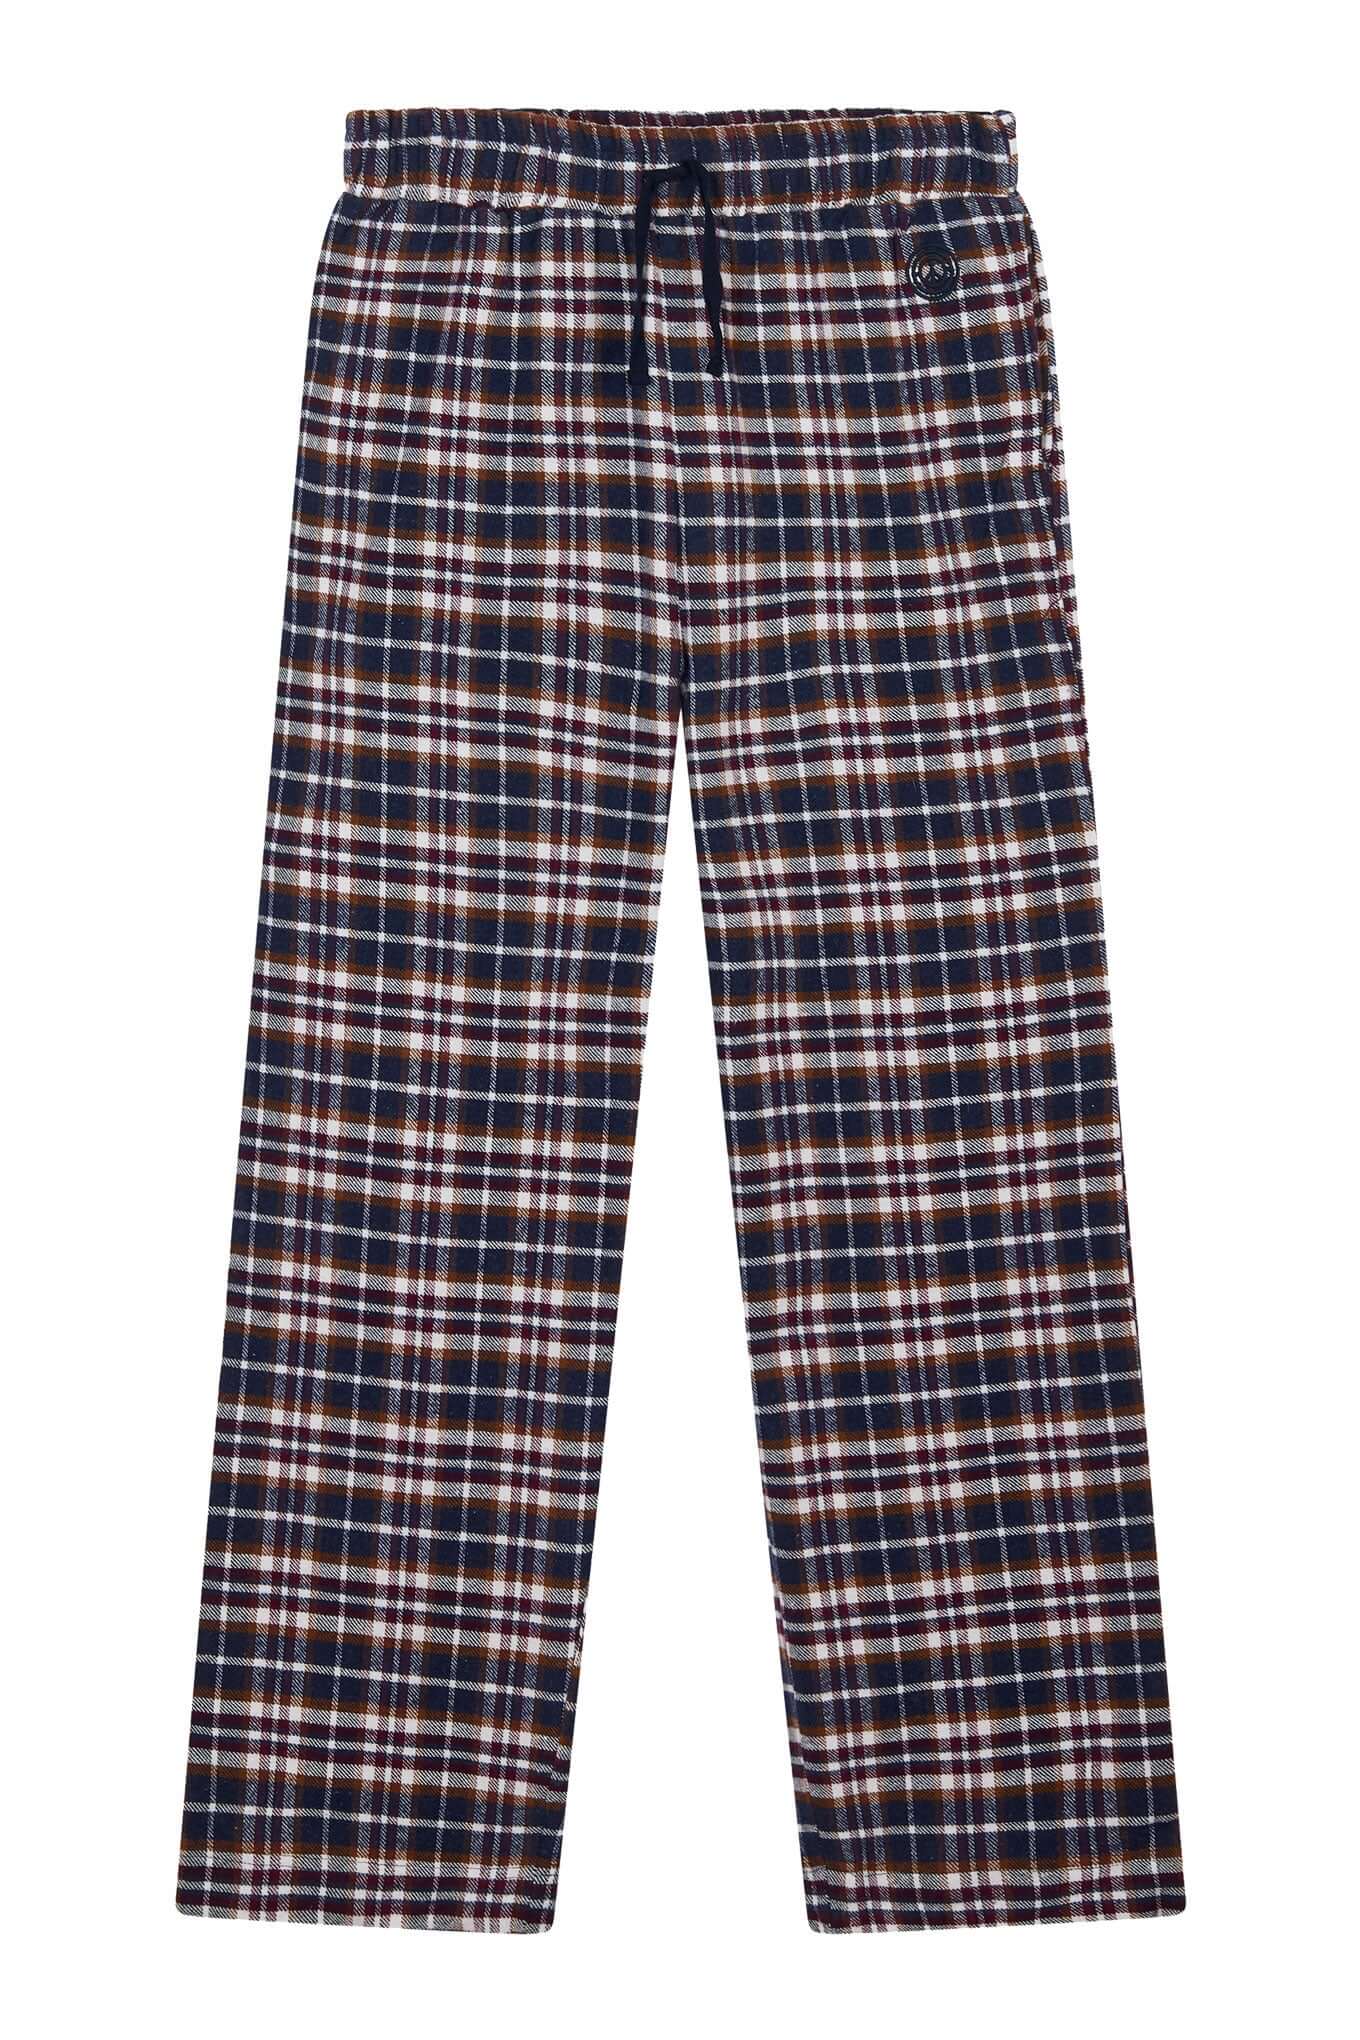 JIM JAM Mens - GOTS Organic Cotton Pyjama Set Navy